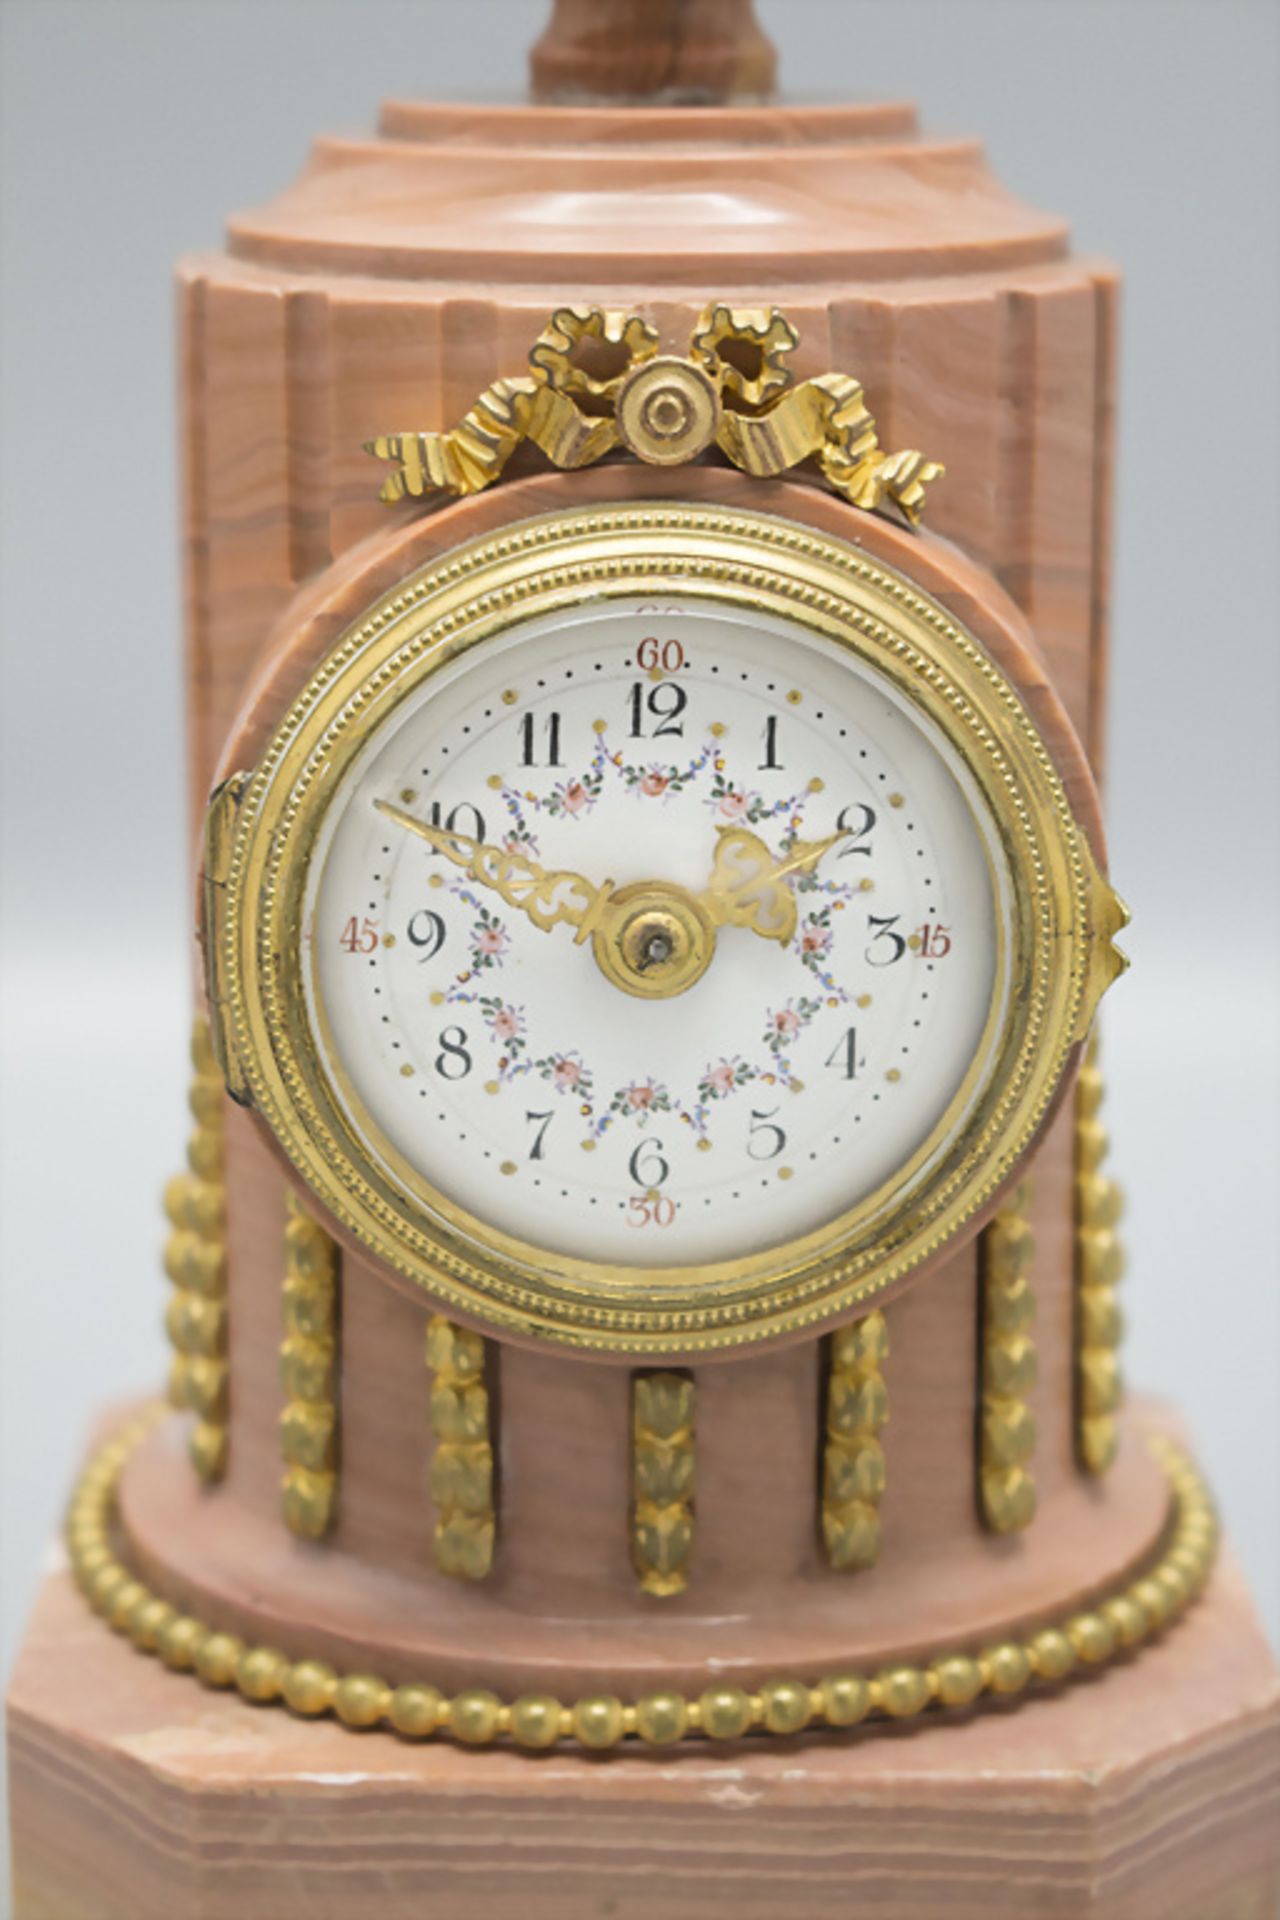 Kaminuhr mit Beistellern / A mantel clock with candlesticks, Swiss / Schweiz, um 1900 - Image 3 of 8